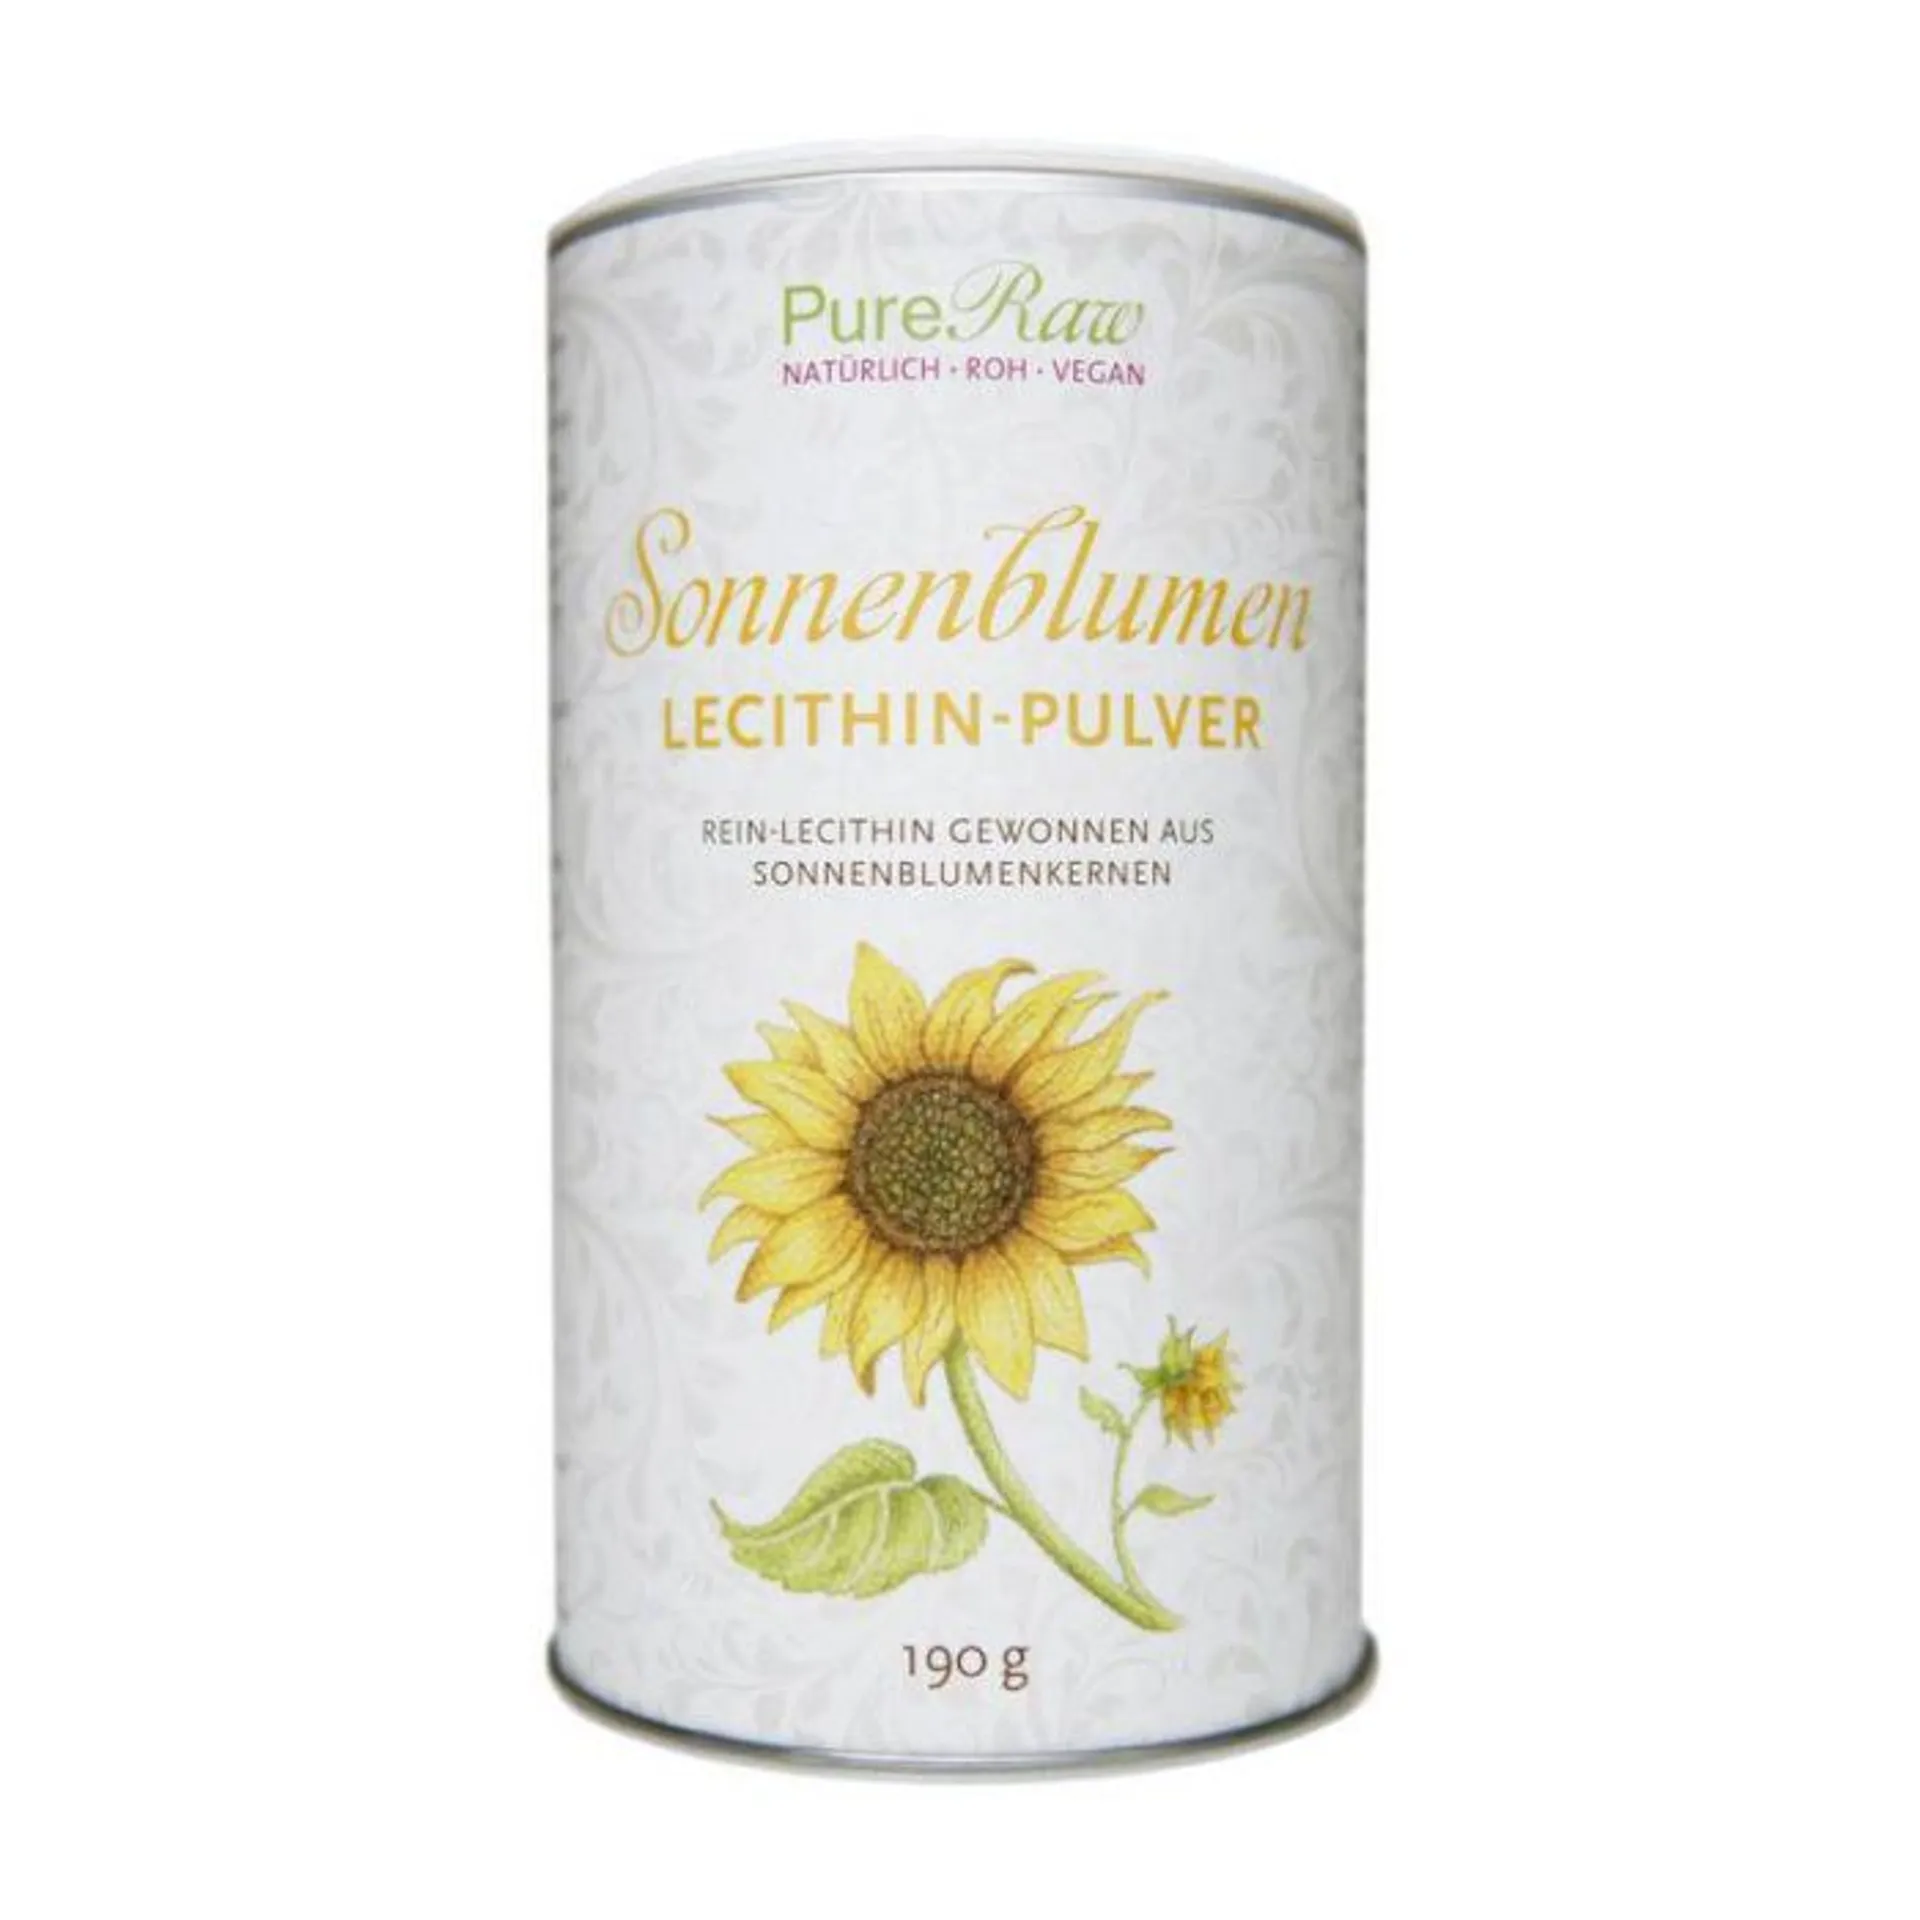 PureRaw Sonnenblumenlecithin Pulver 190g